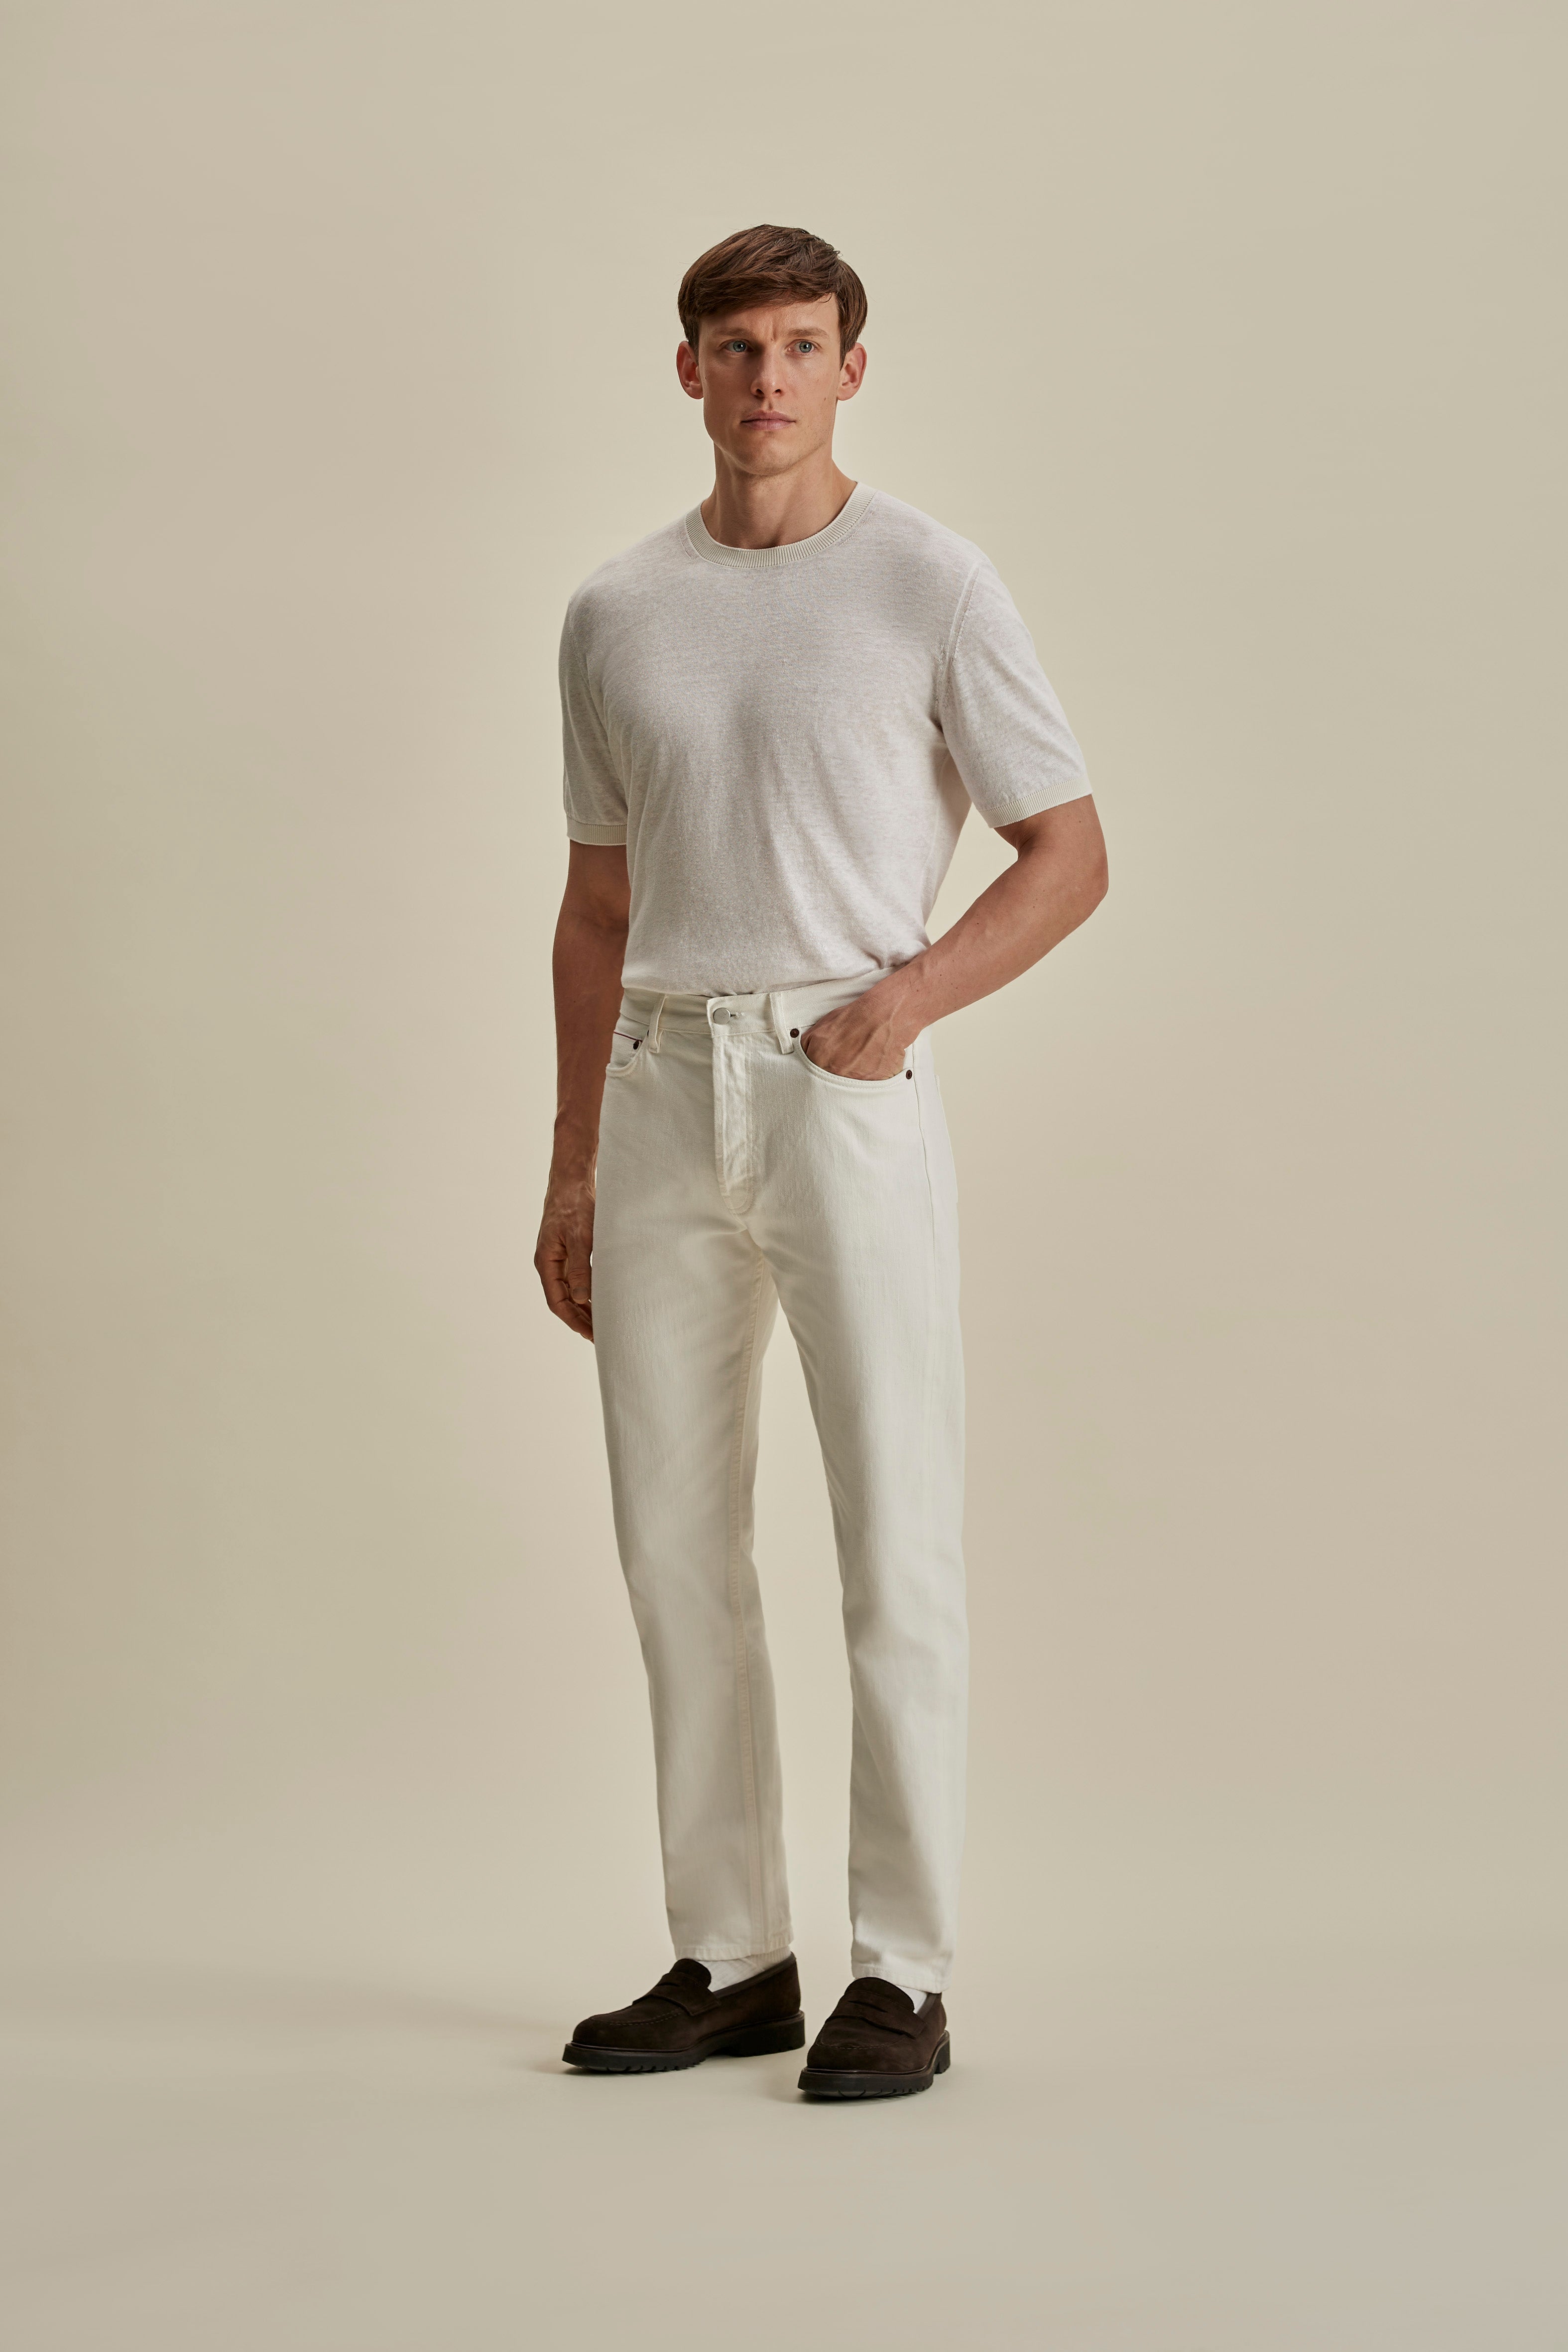 Linen Cotton Contrast Rib T-Shirt White White Full Length Model Image